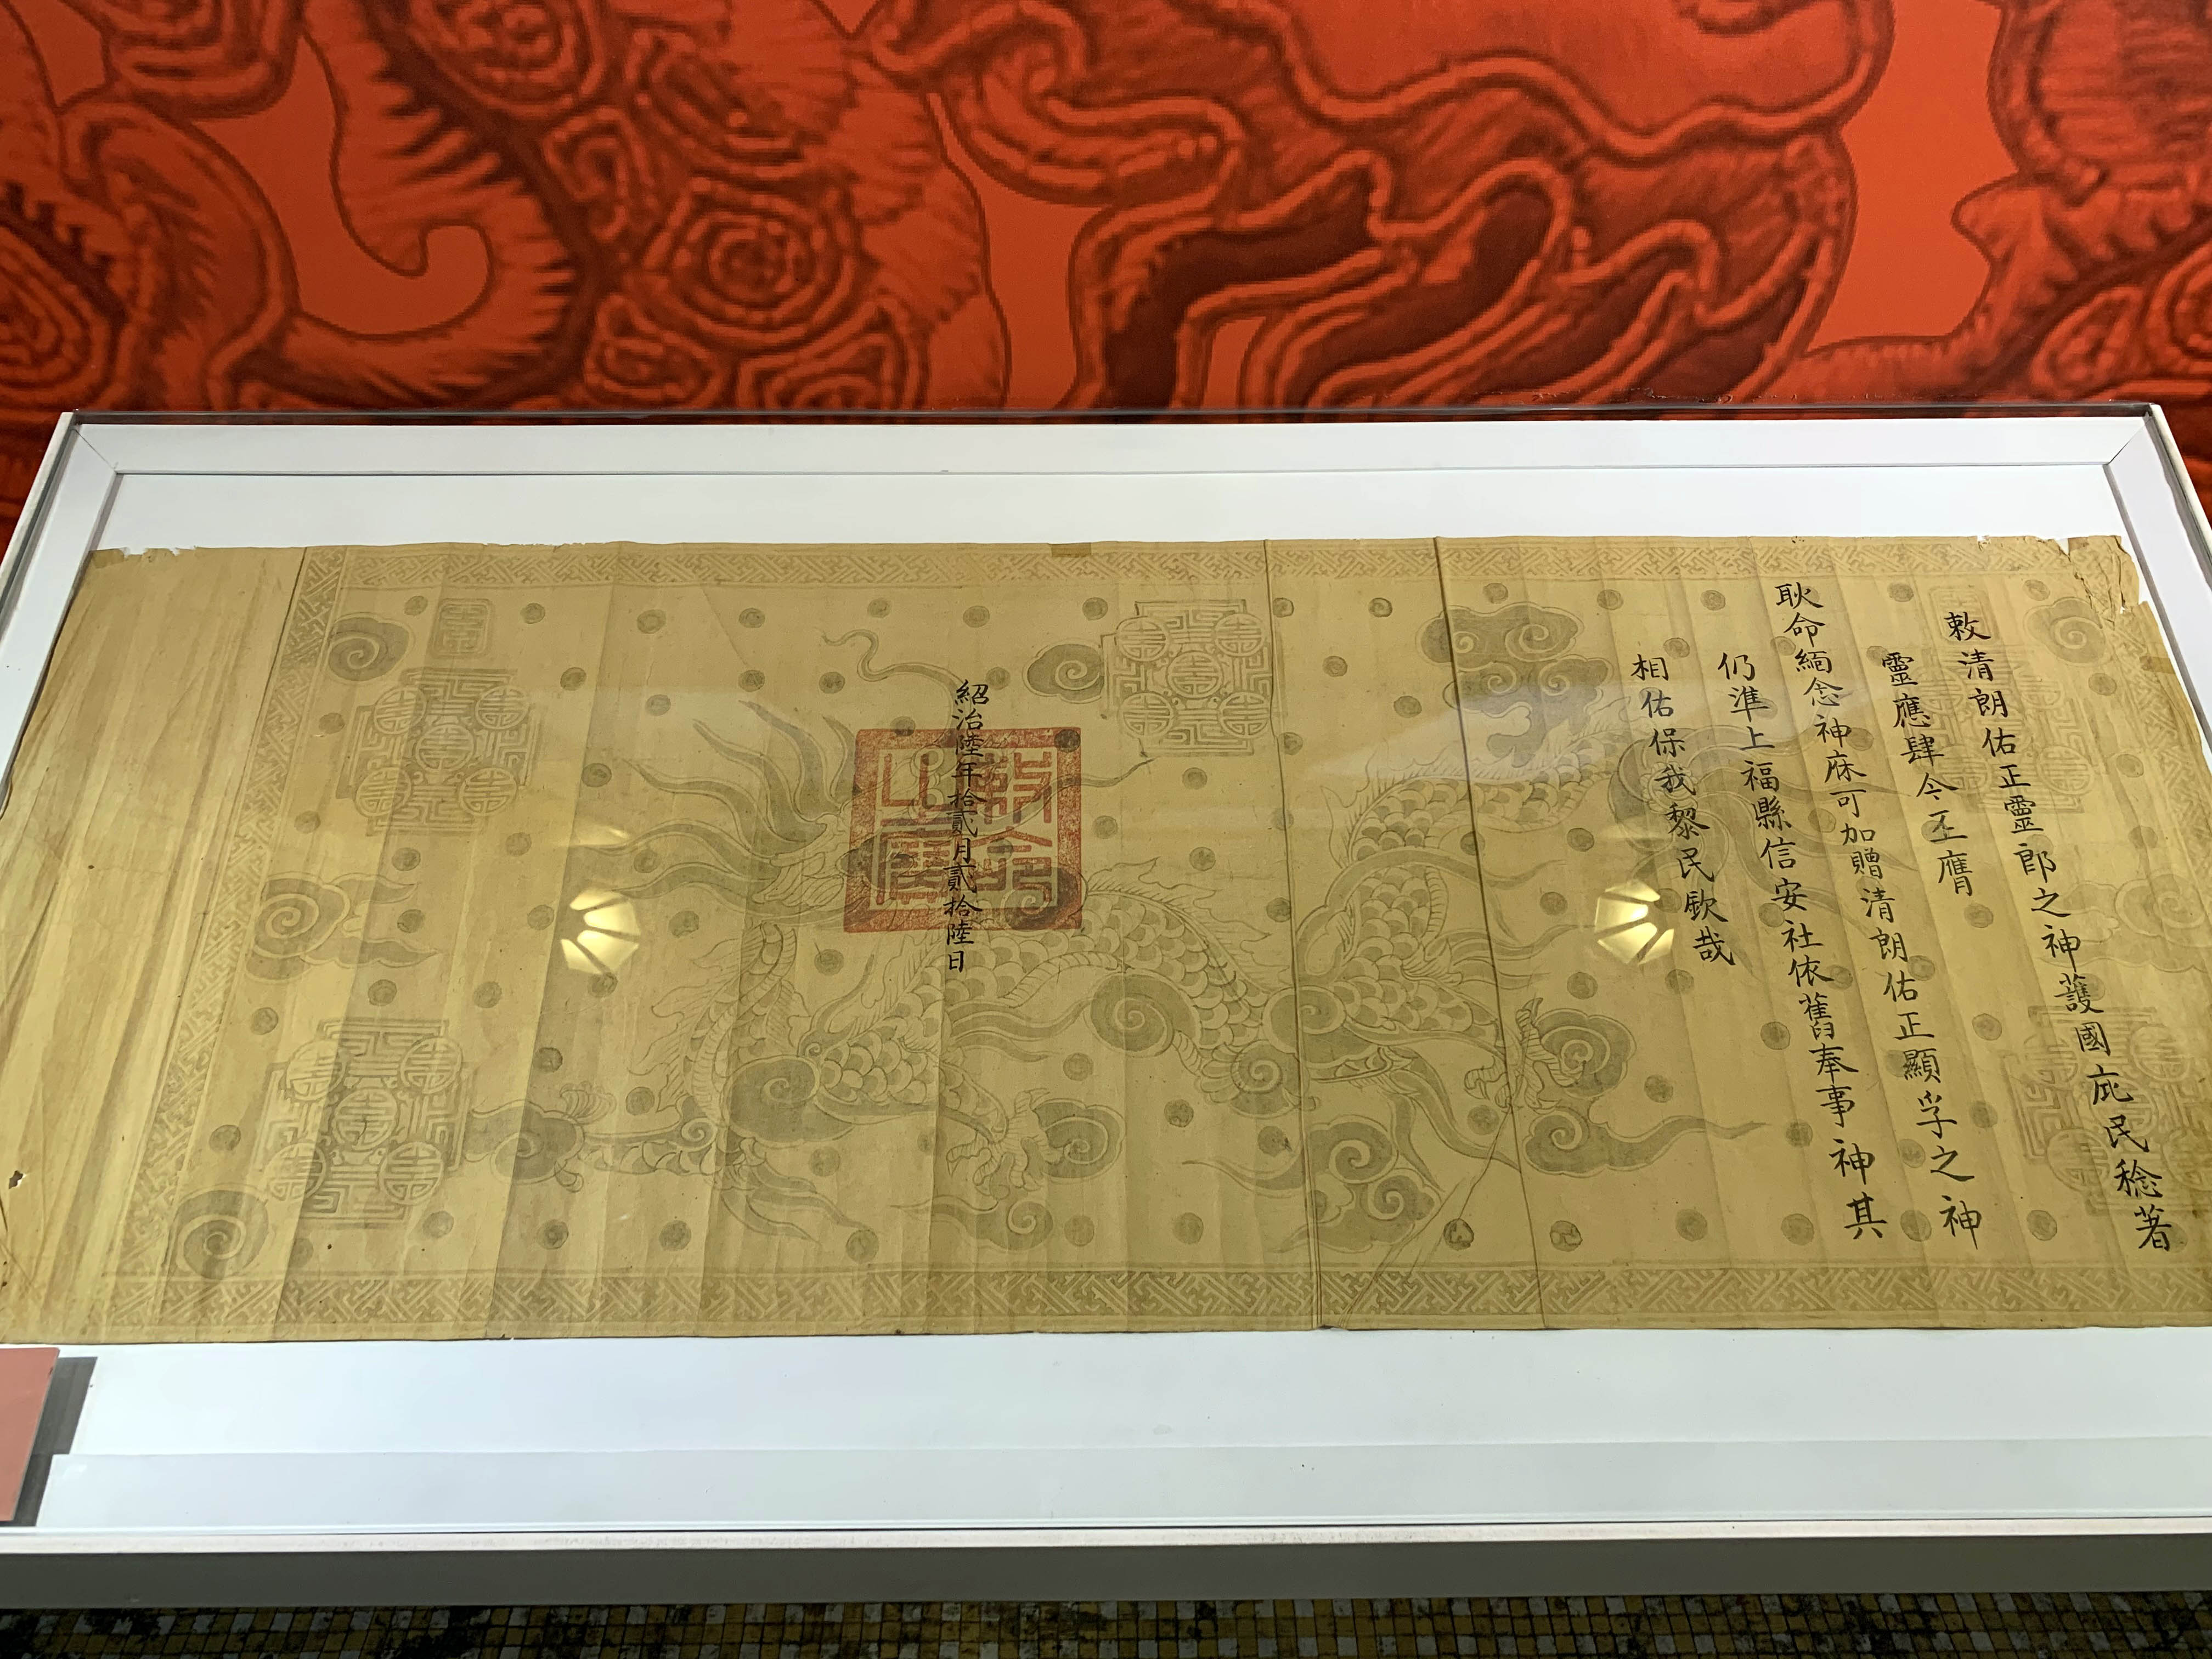 Ngọc dụ bằng vải thêu và sắc phong thần bằng giấy thời vua Thiệu Trị là những hiện vật lần đầu tiên được ra mắt công chúng.